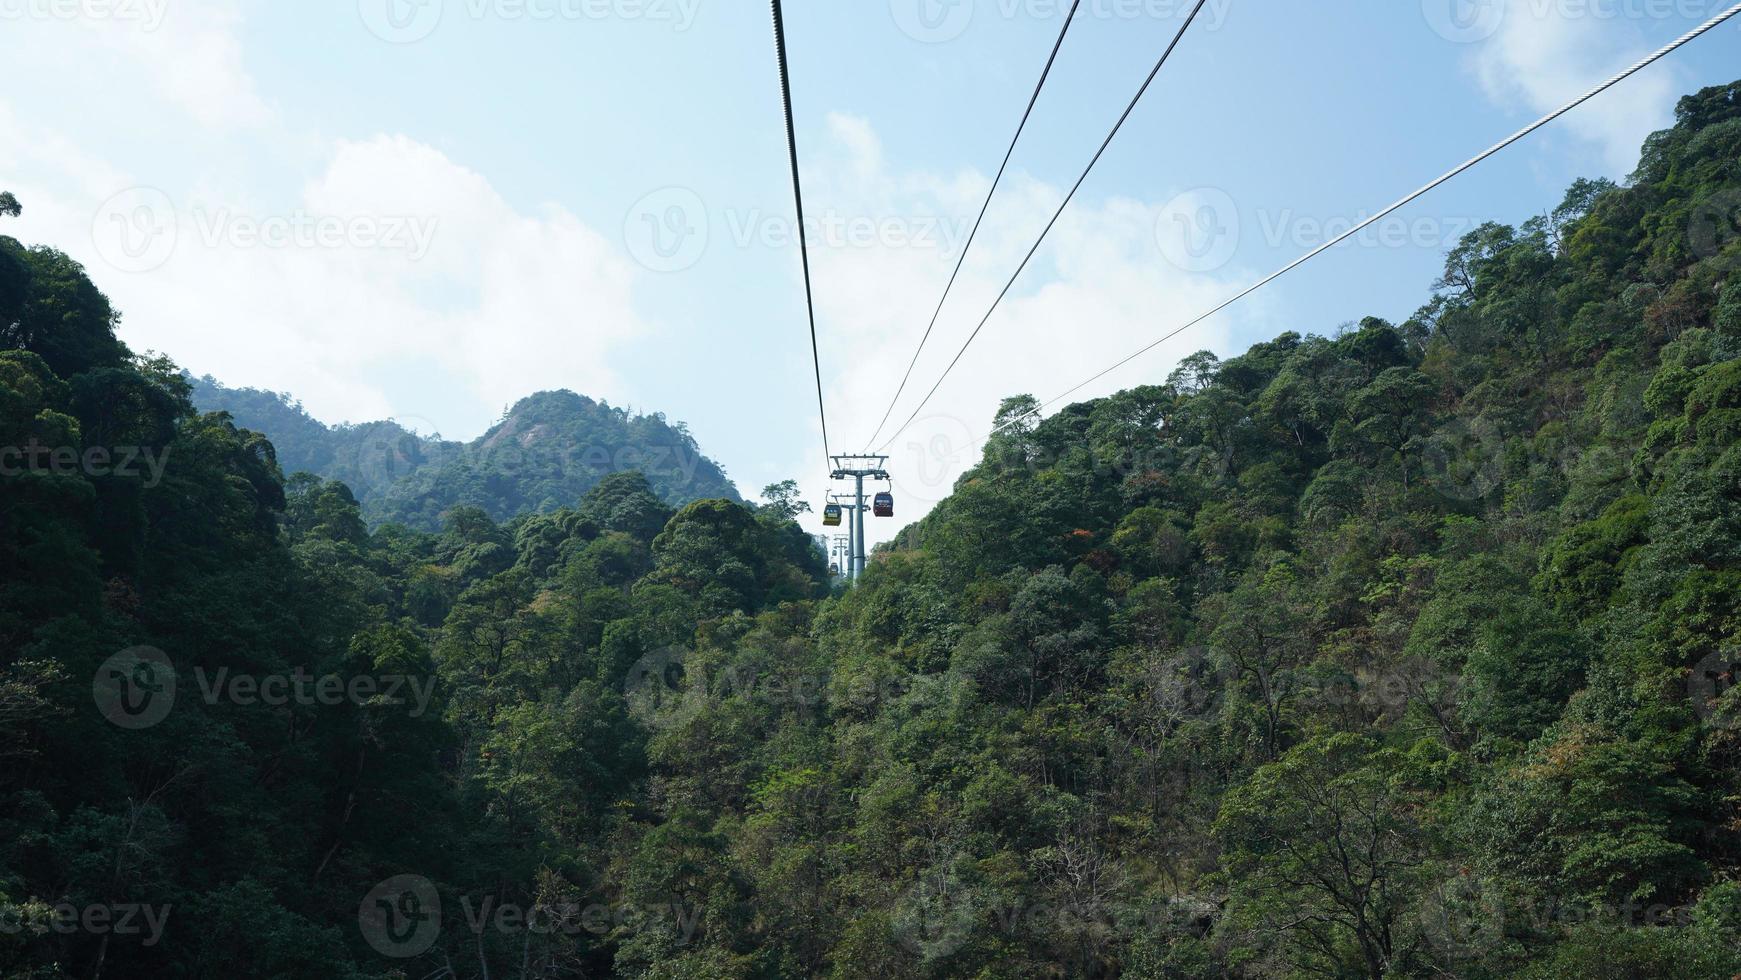 de skön bergen landskap med de grön skog och de klättrande kabel- bil som bakgrund på de bergen foto